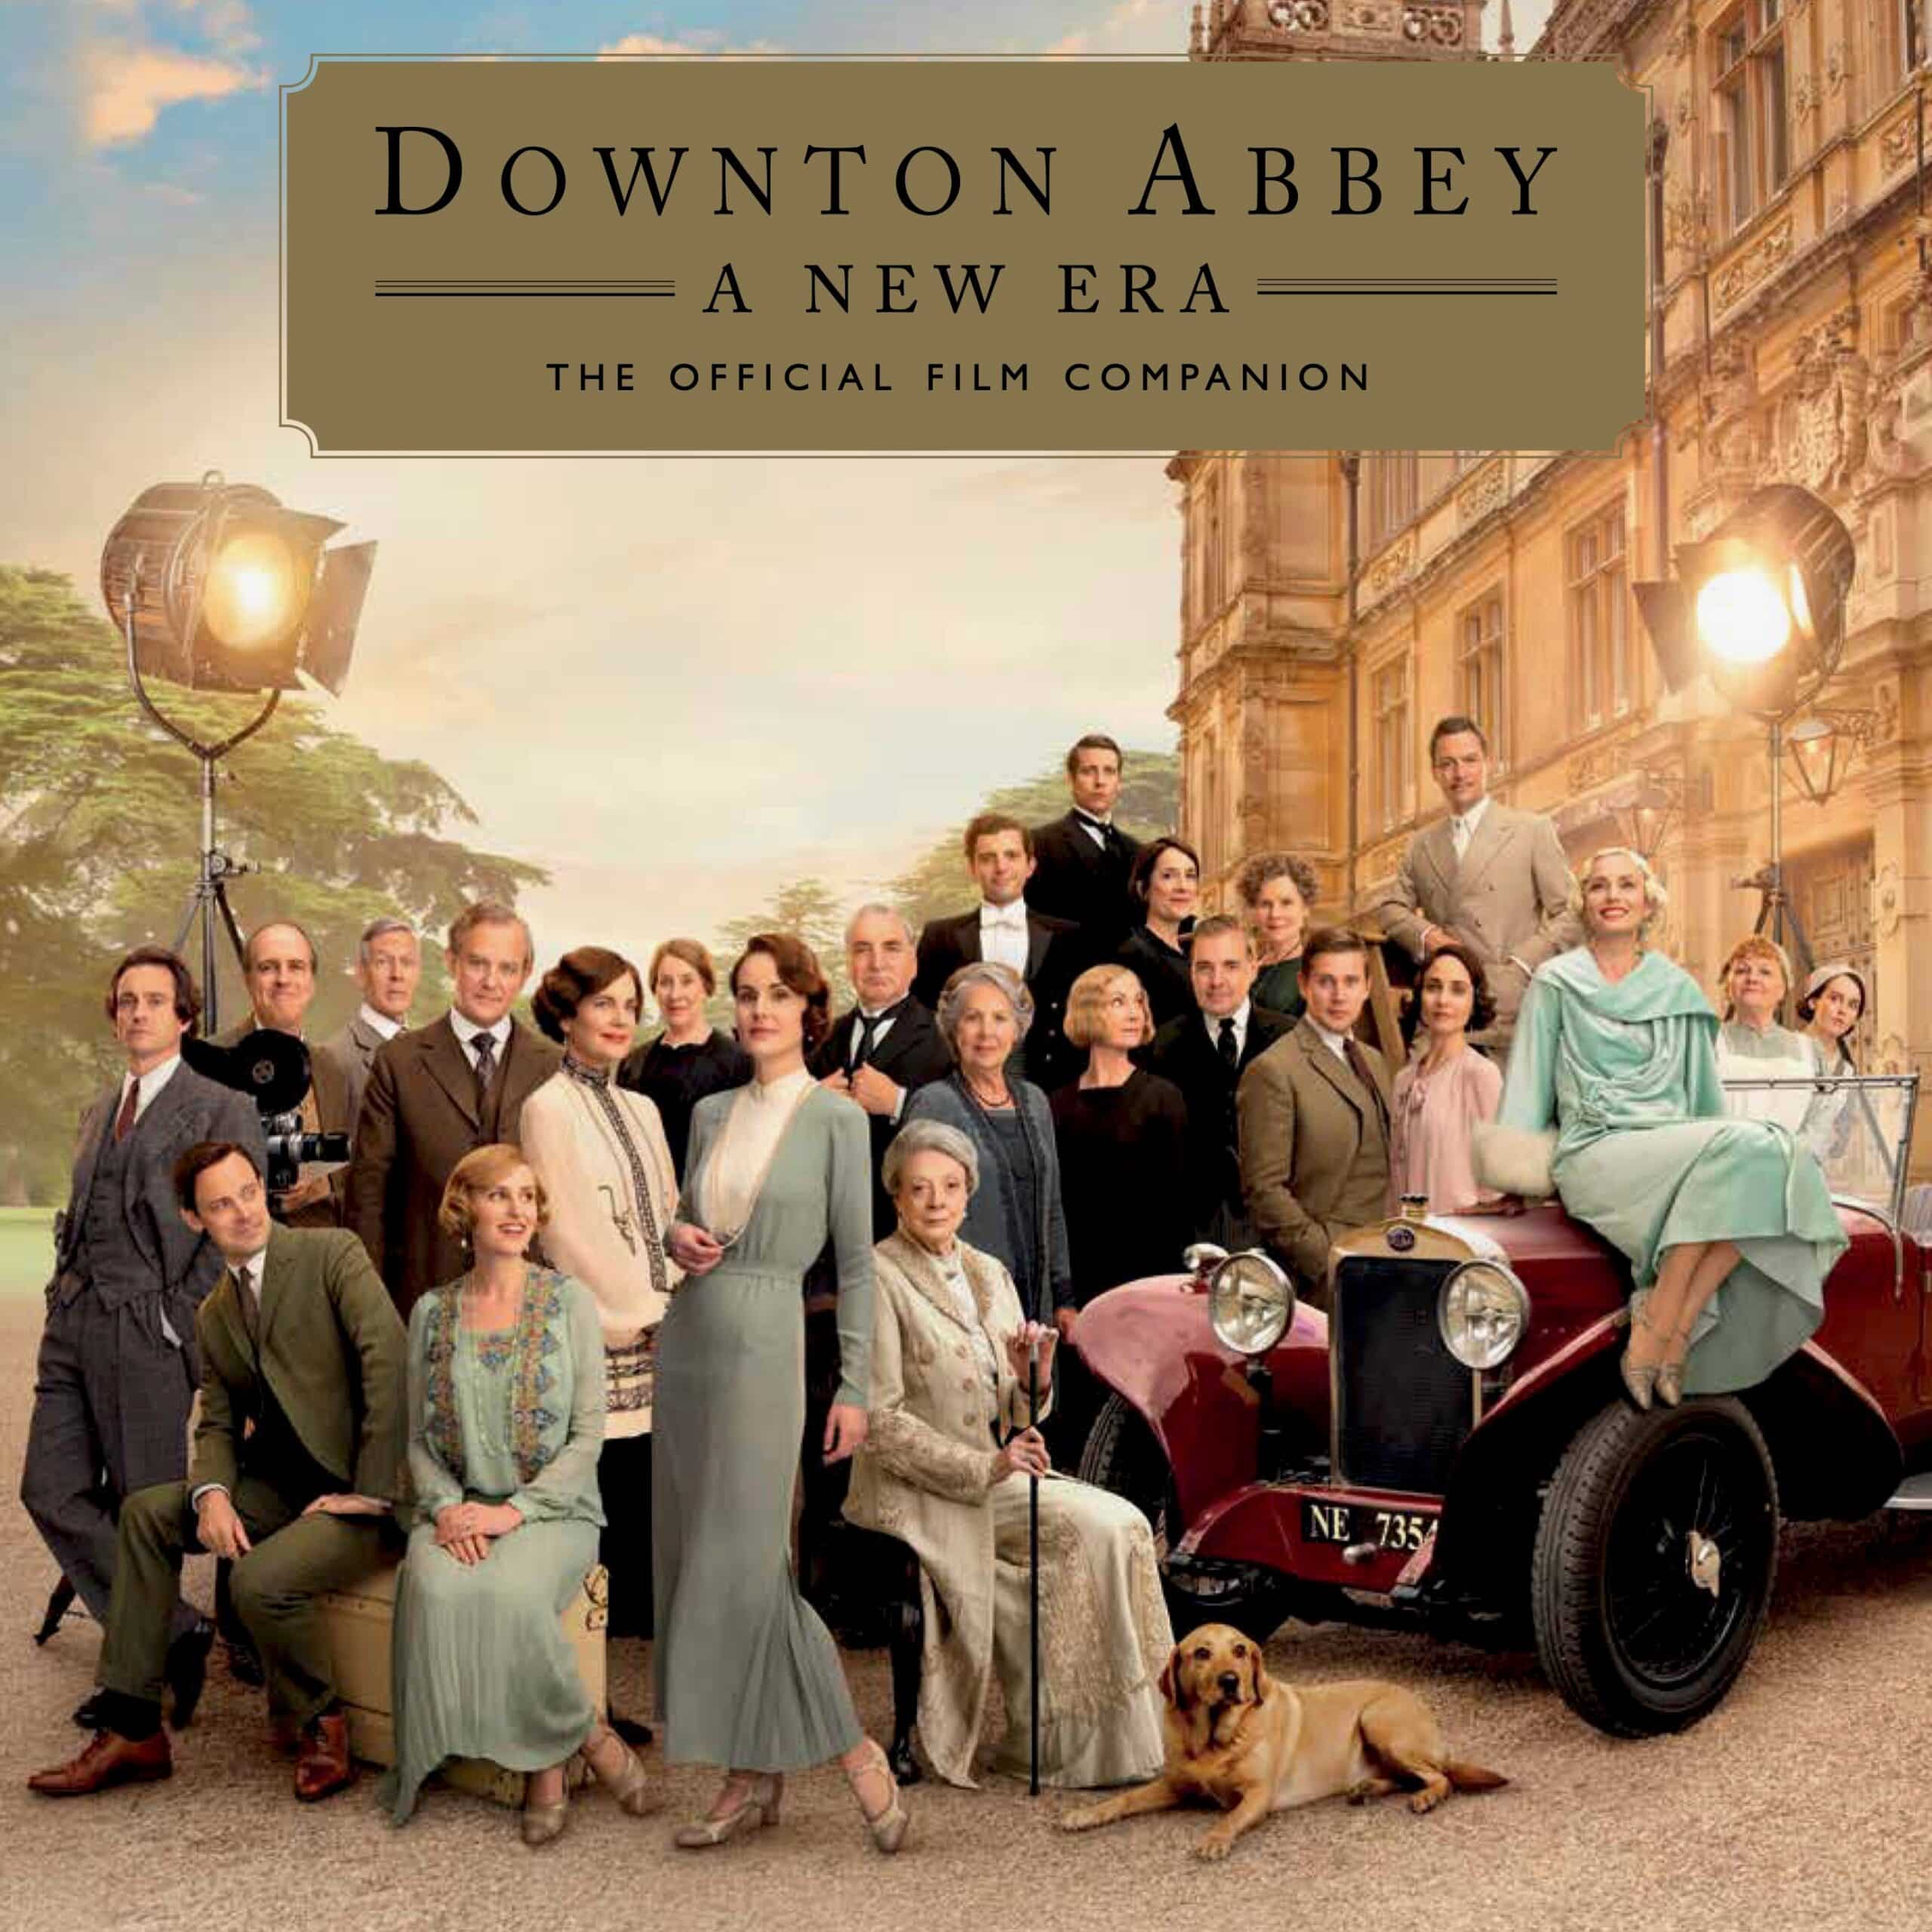 Downton Abbey A New Era Companion Guide